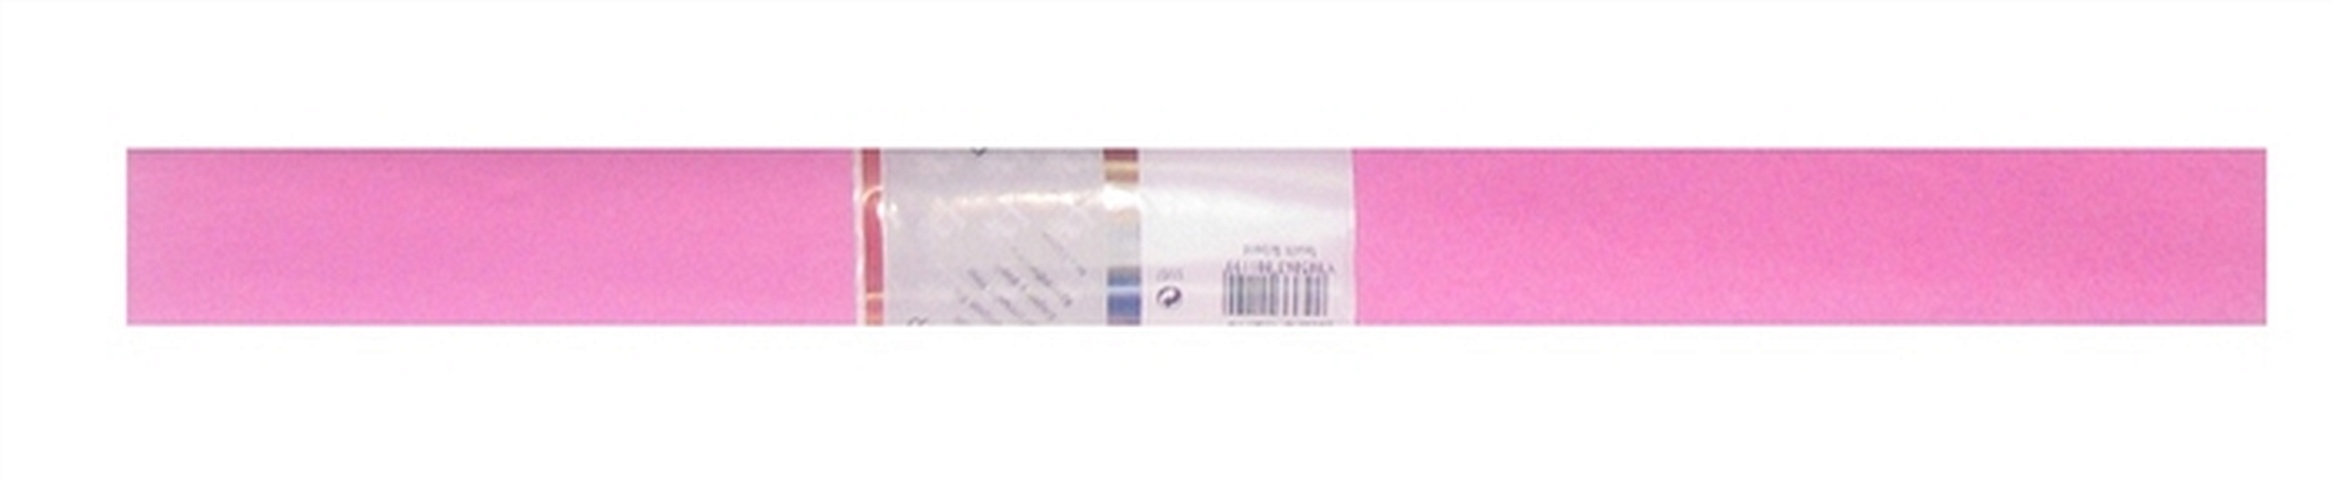 Бумага гофрированная Розовая 50*250, WEROLA бумага крепированная werola цвет бордо 50х250 см